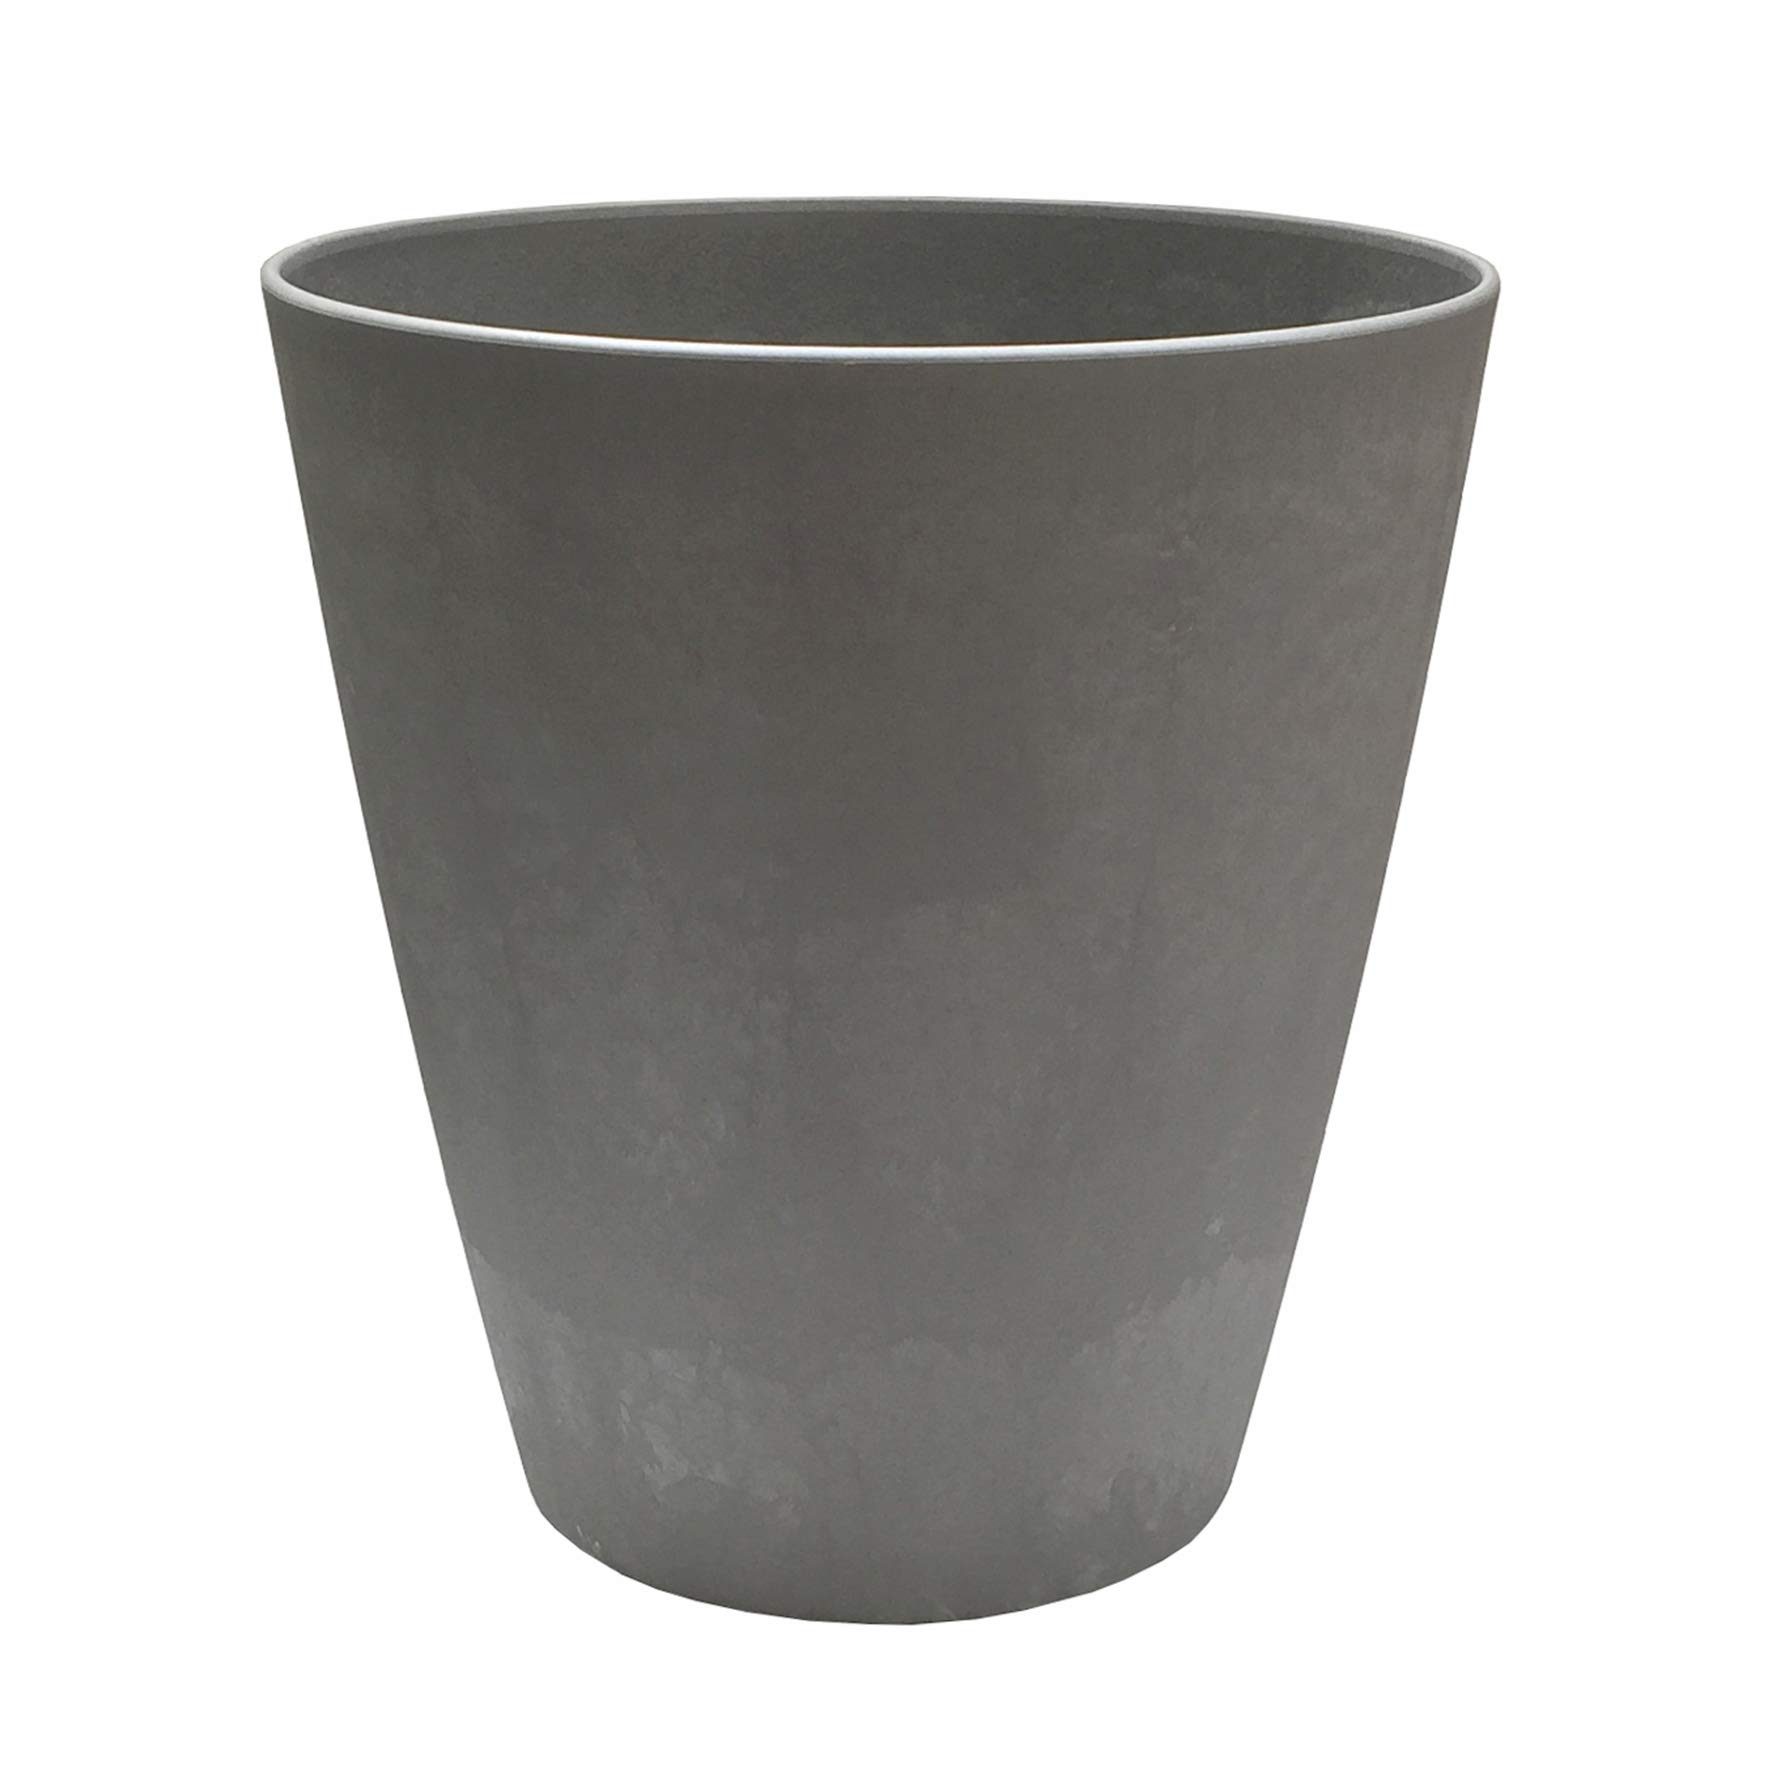 POETIC - Runder Blumenkübel - Ø37,9 x H41 cm - 30 Liter - Für den Innenbereich - Stöpsel mit Überlauf - Aus robustem Kunststoff - Farbe Zement - 5 Jahre Garantie